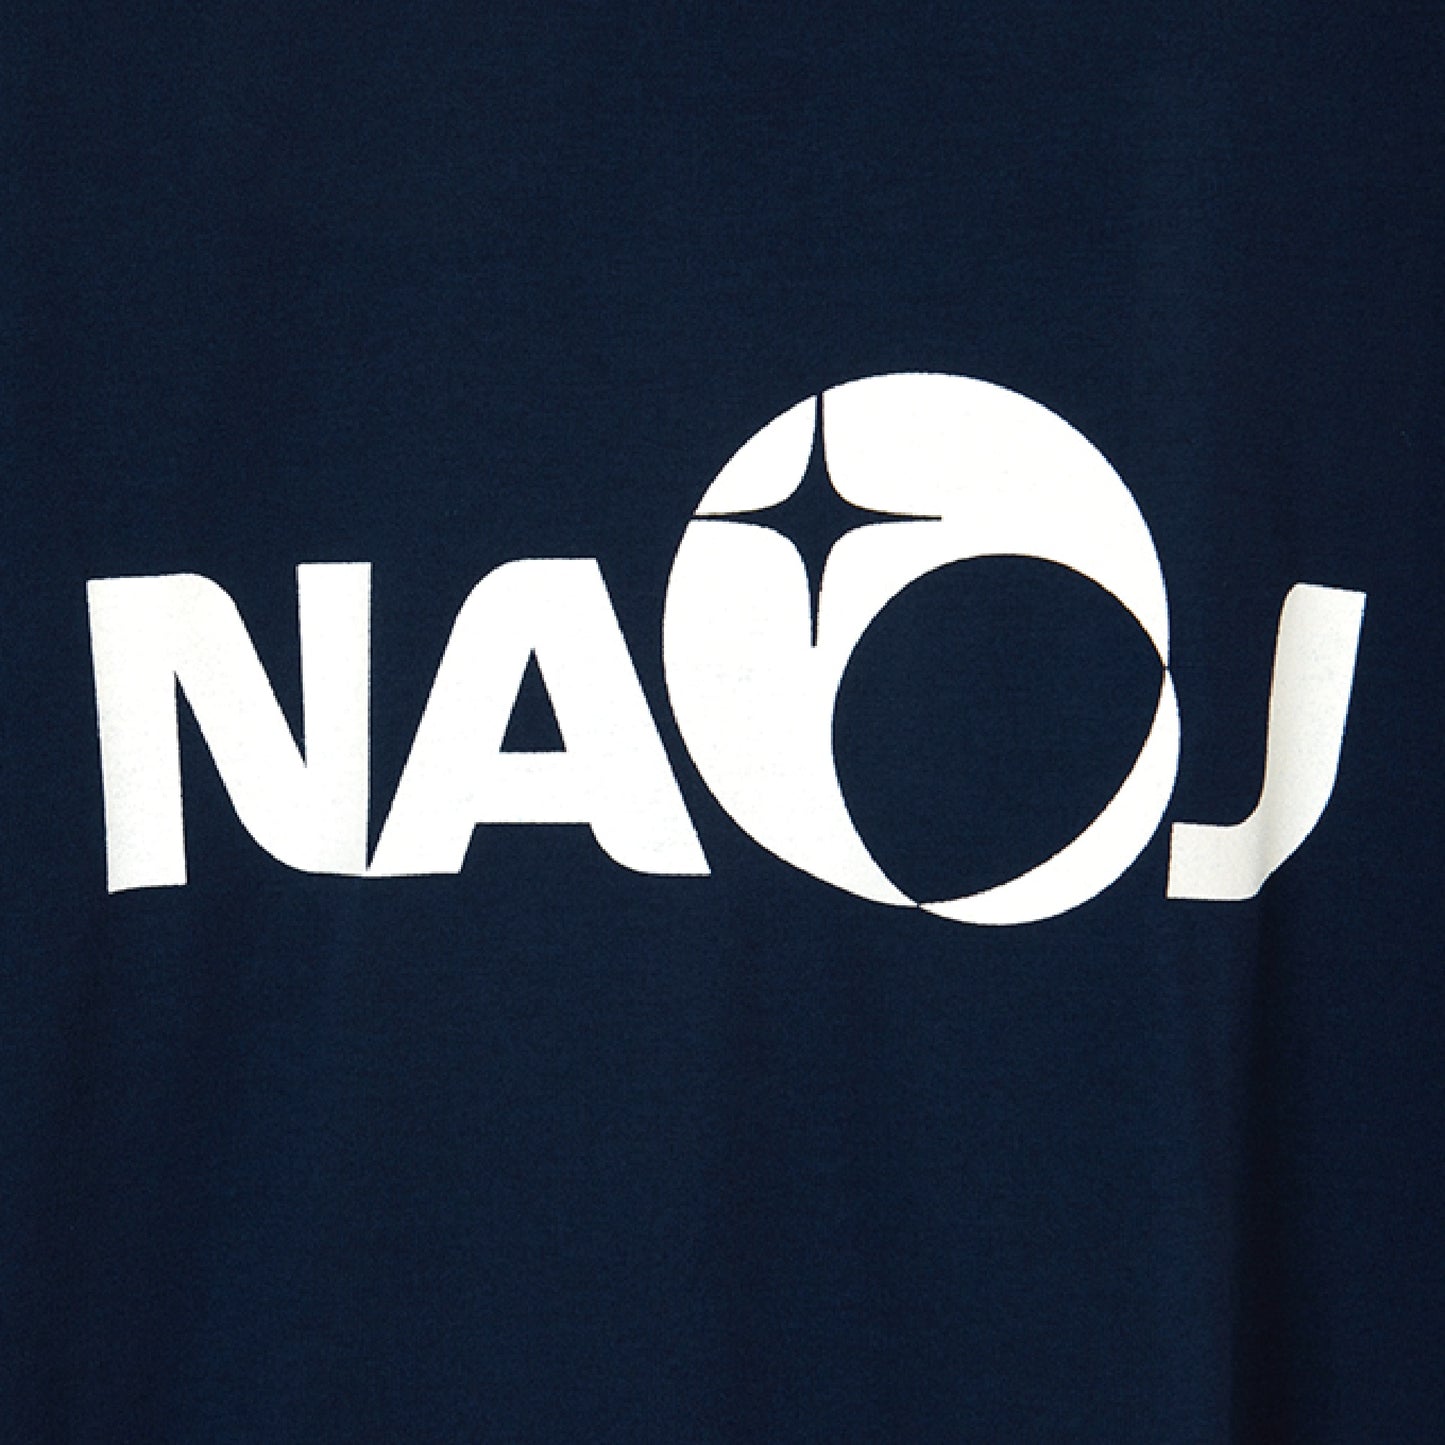 国立天文台 NAOJ ロゴマーク WIC. Tシャツ ネイビー XL 02 1336